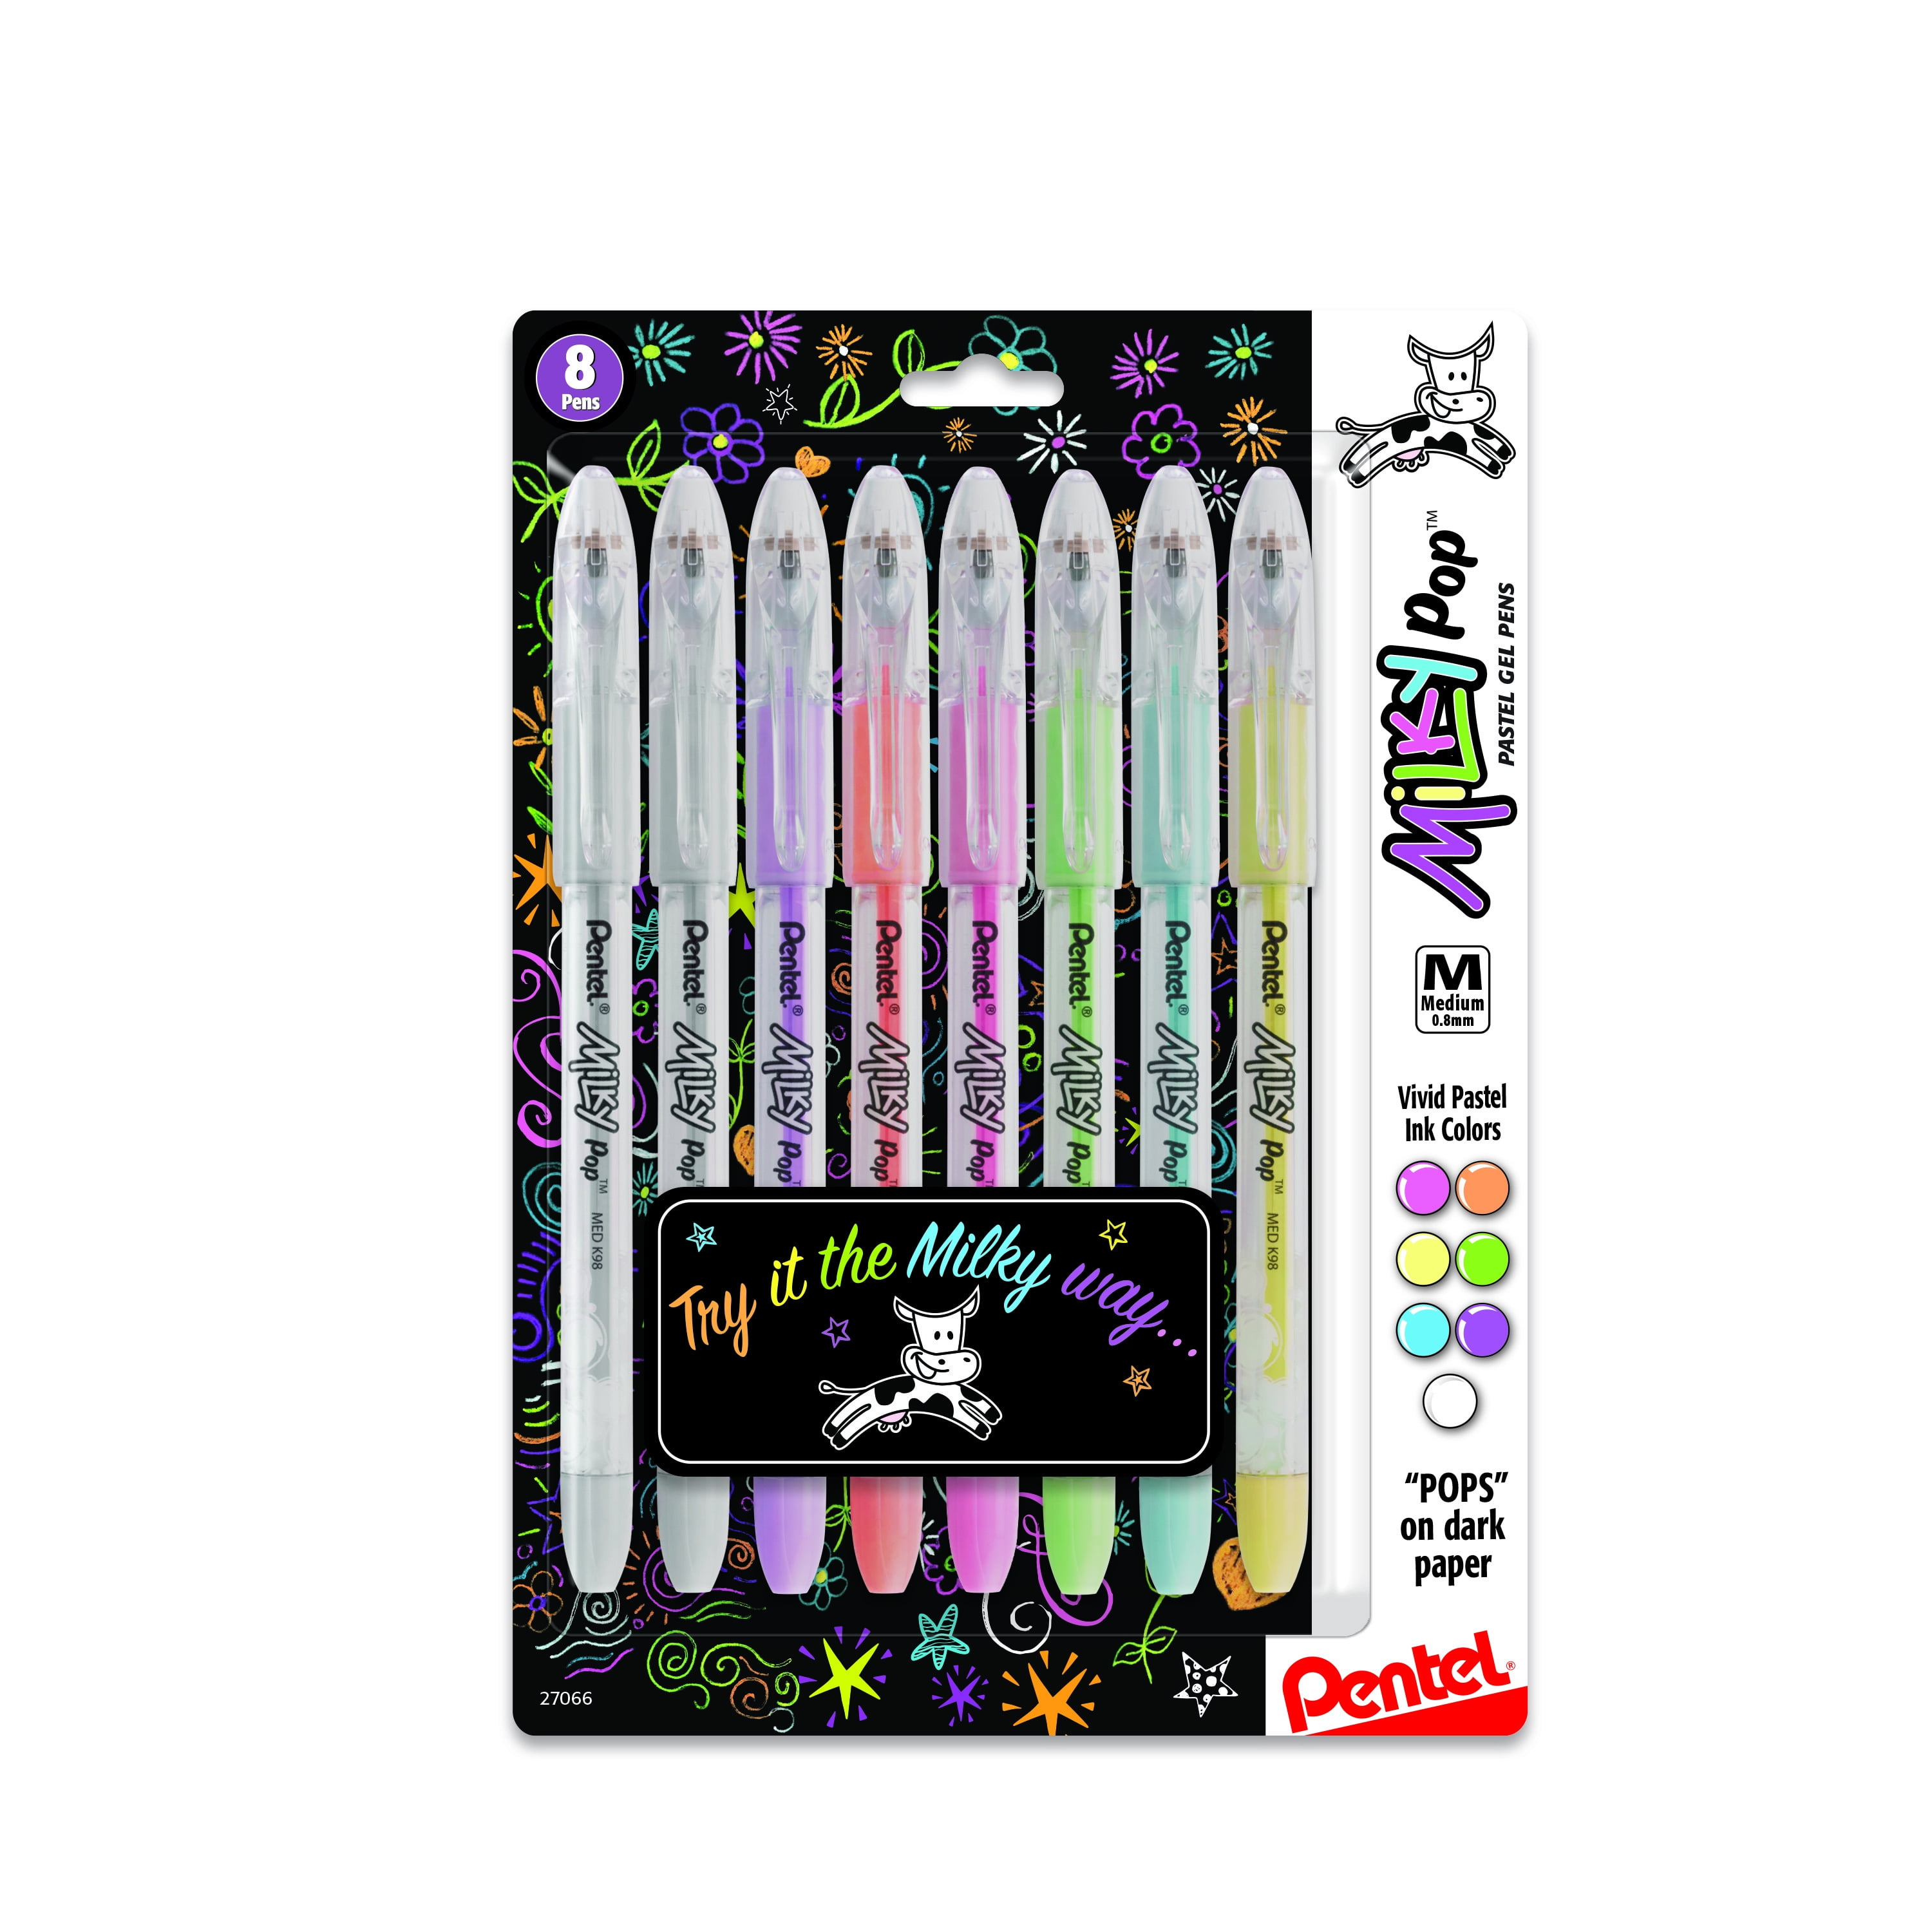 Stoutmoedig mot dood Pentel Milky Pop Gel Pen, 0.8mm, Assorted Colors, Pack of 8 - Walmart.com